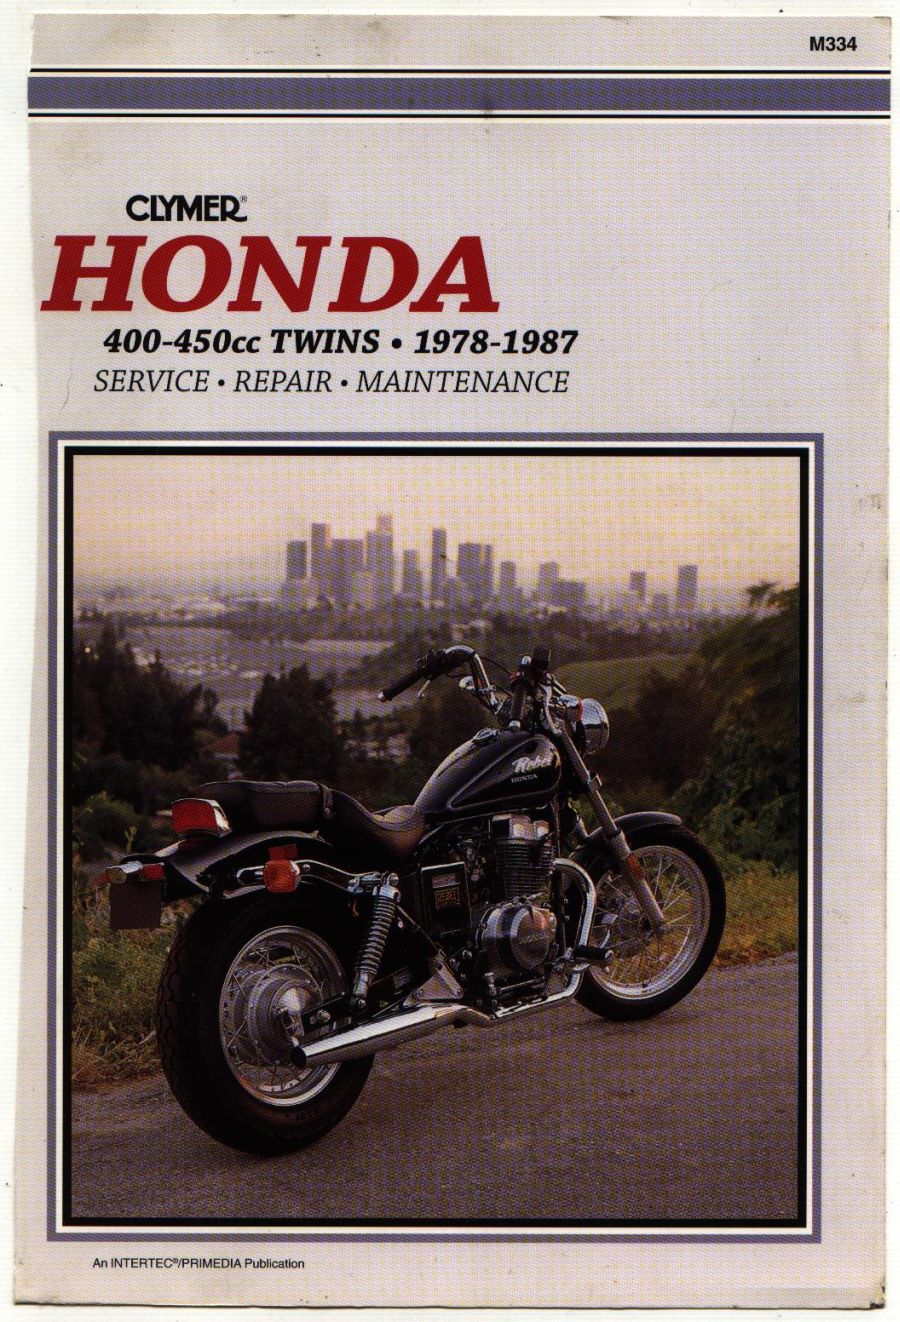 Honda CB 400 Repair Manual PDF Download - Service manual - Repair manual PDF Download